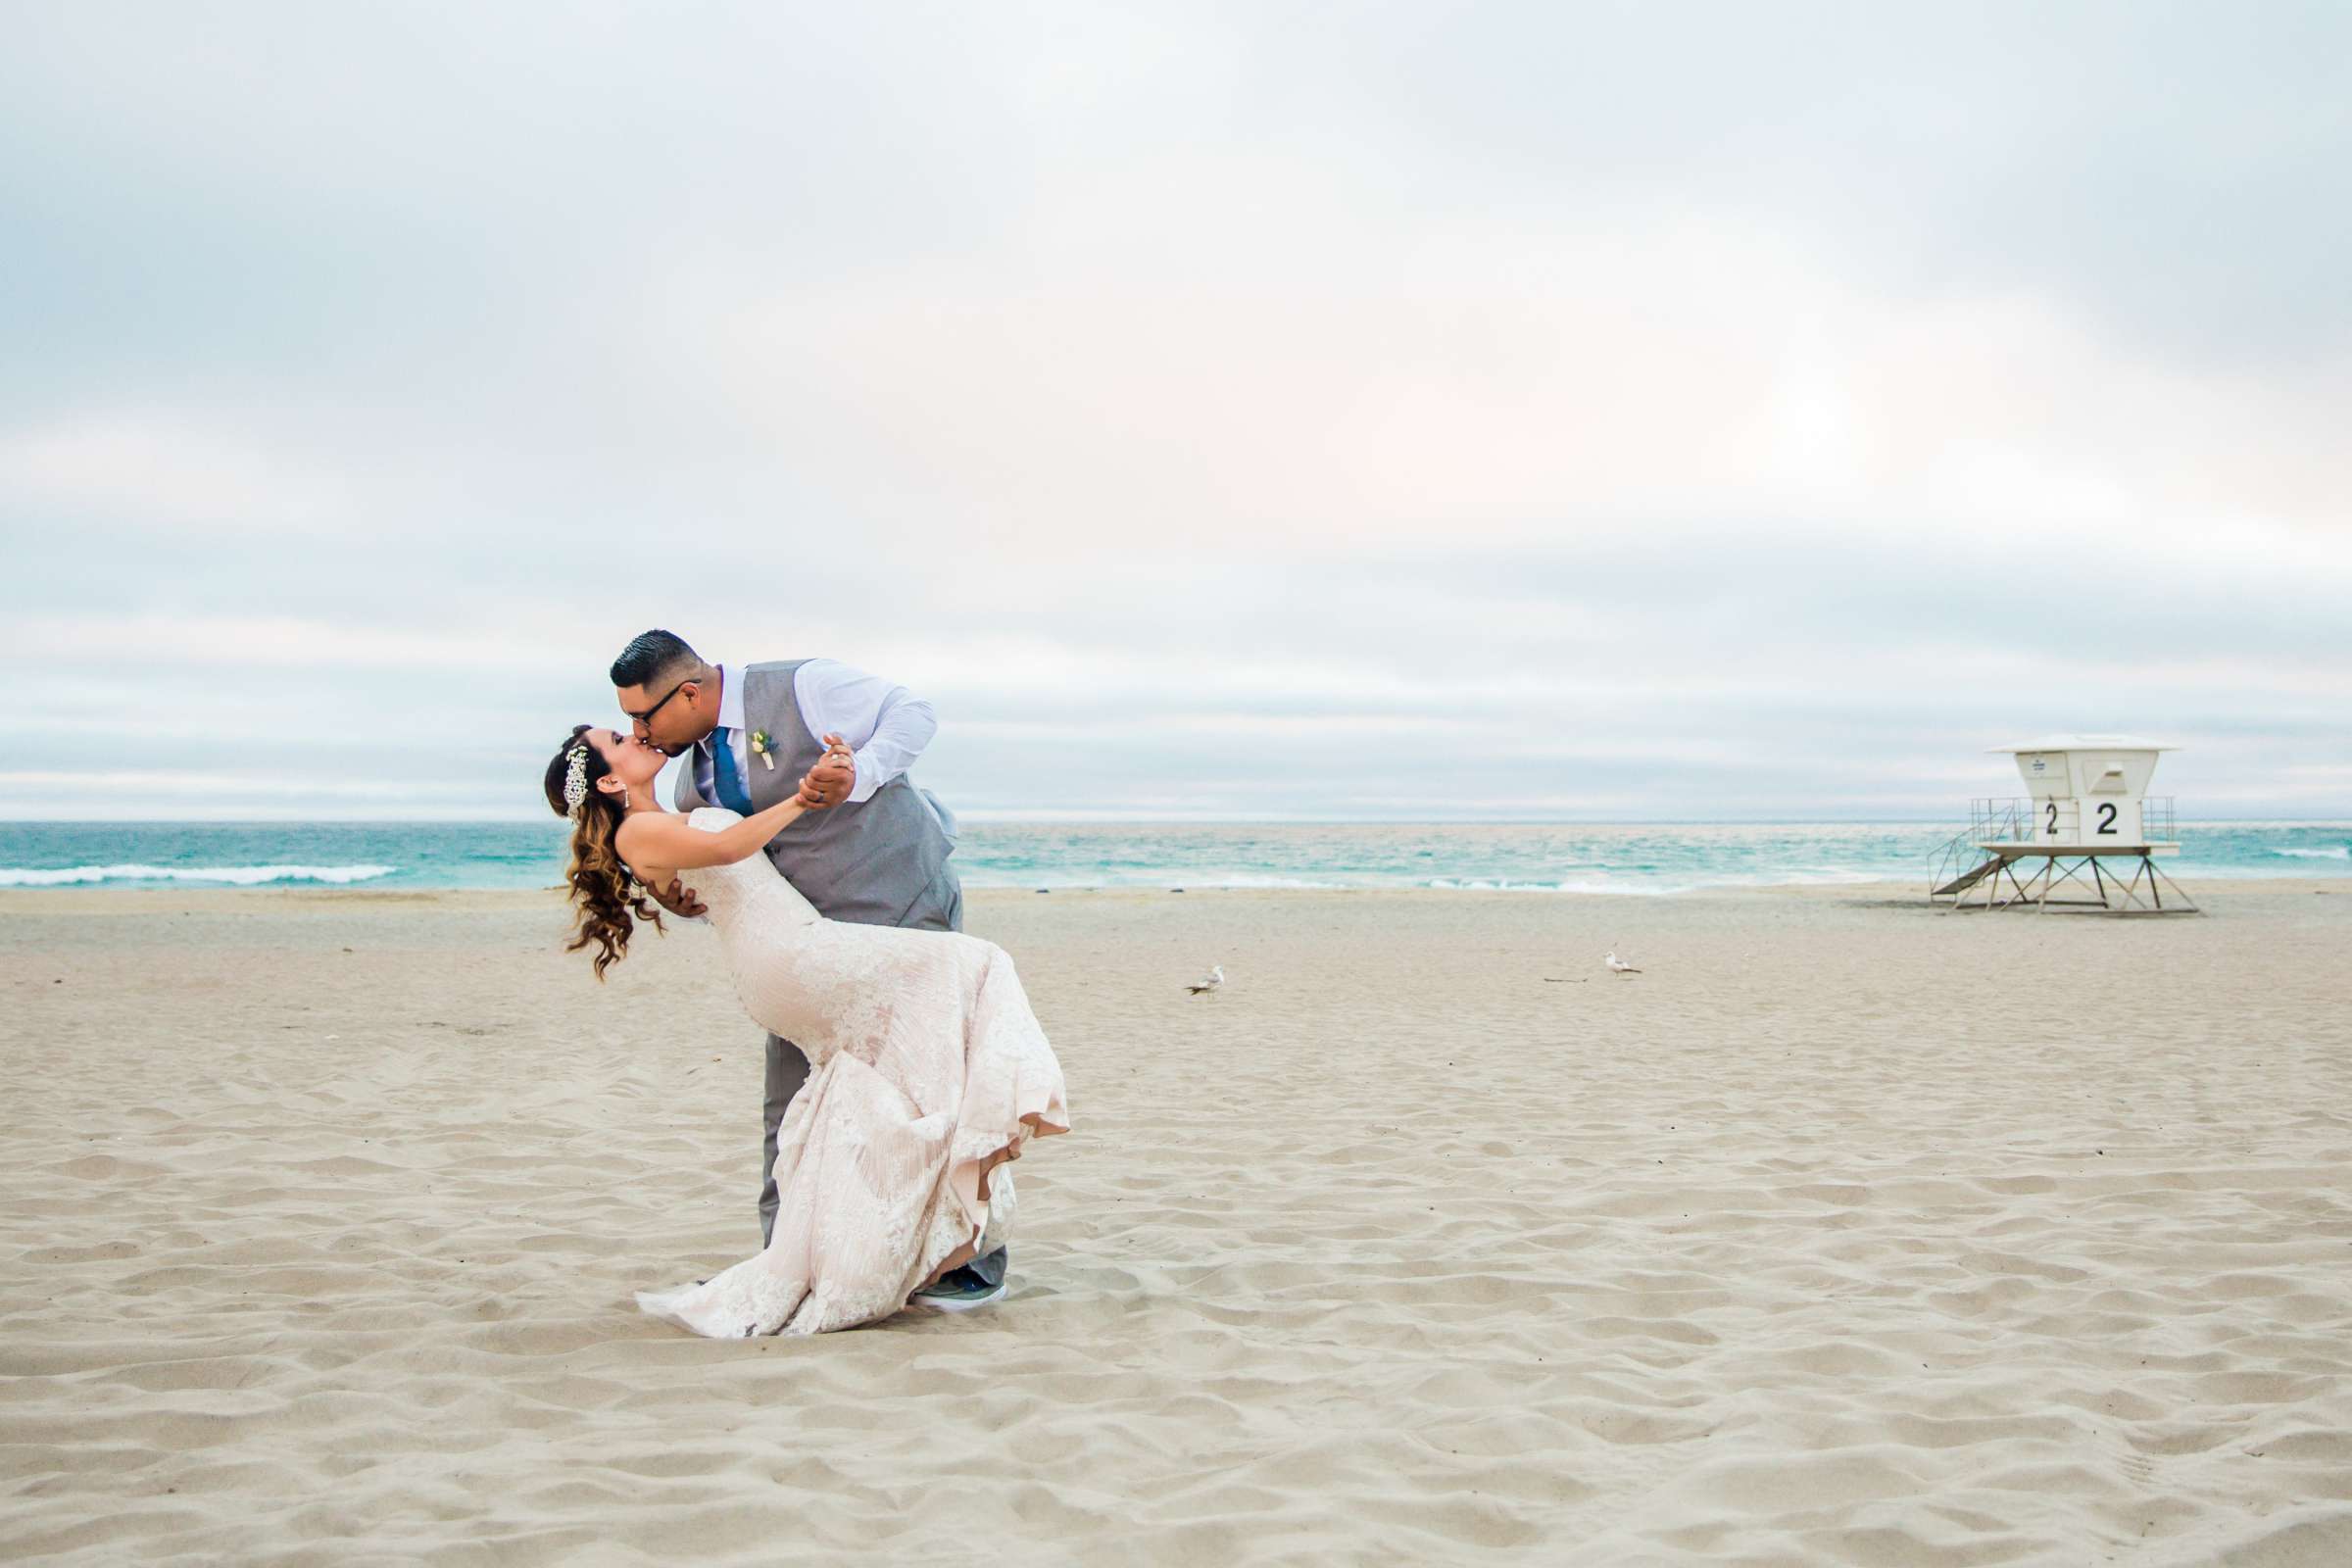 Del Mar Beach Resort Wedding coordinated by La Casa Del Mar, Alisa and Carlos Wedding Photo #380904 by True Photography